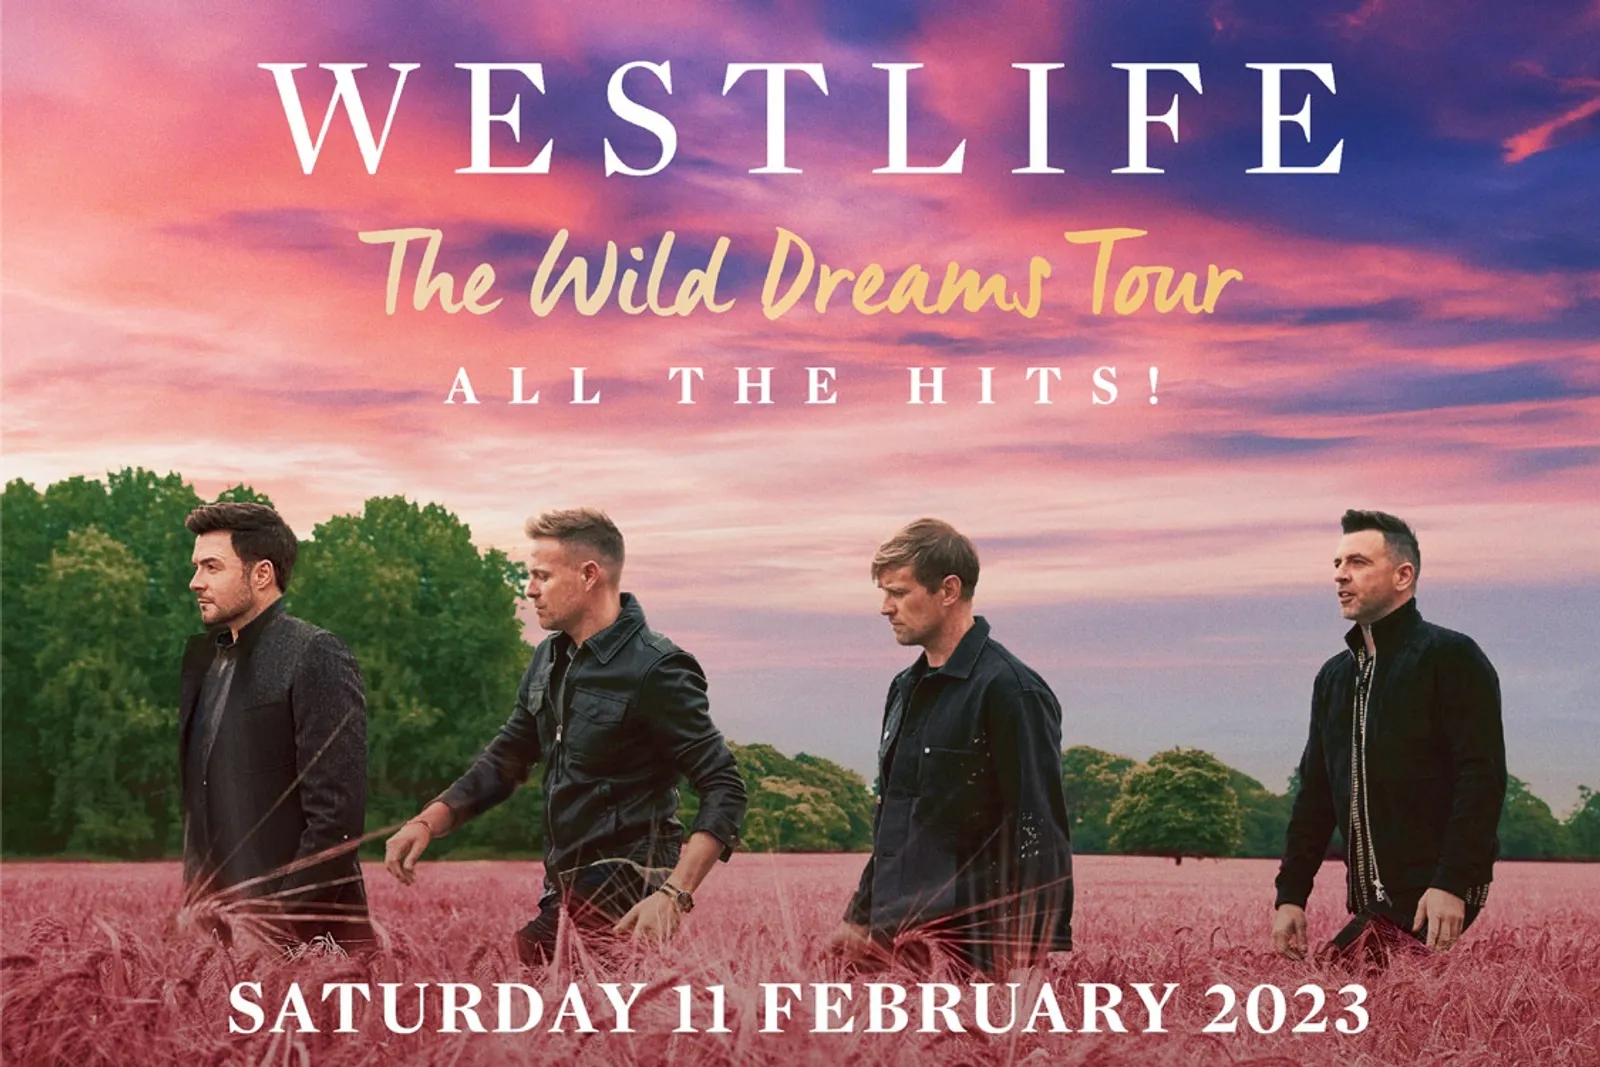 Siap Tampil di Jakarta, Fakta Konser Westlife The Wild Dreams Tour